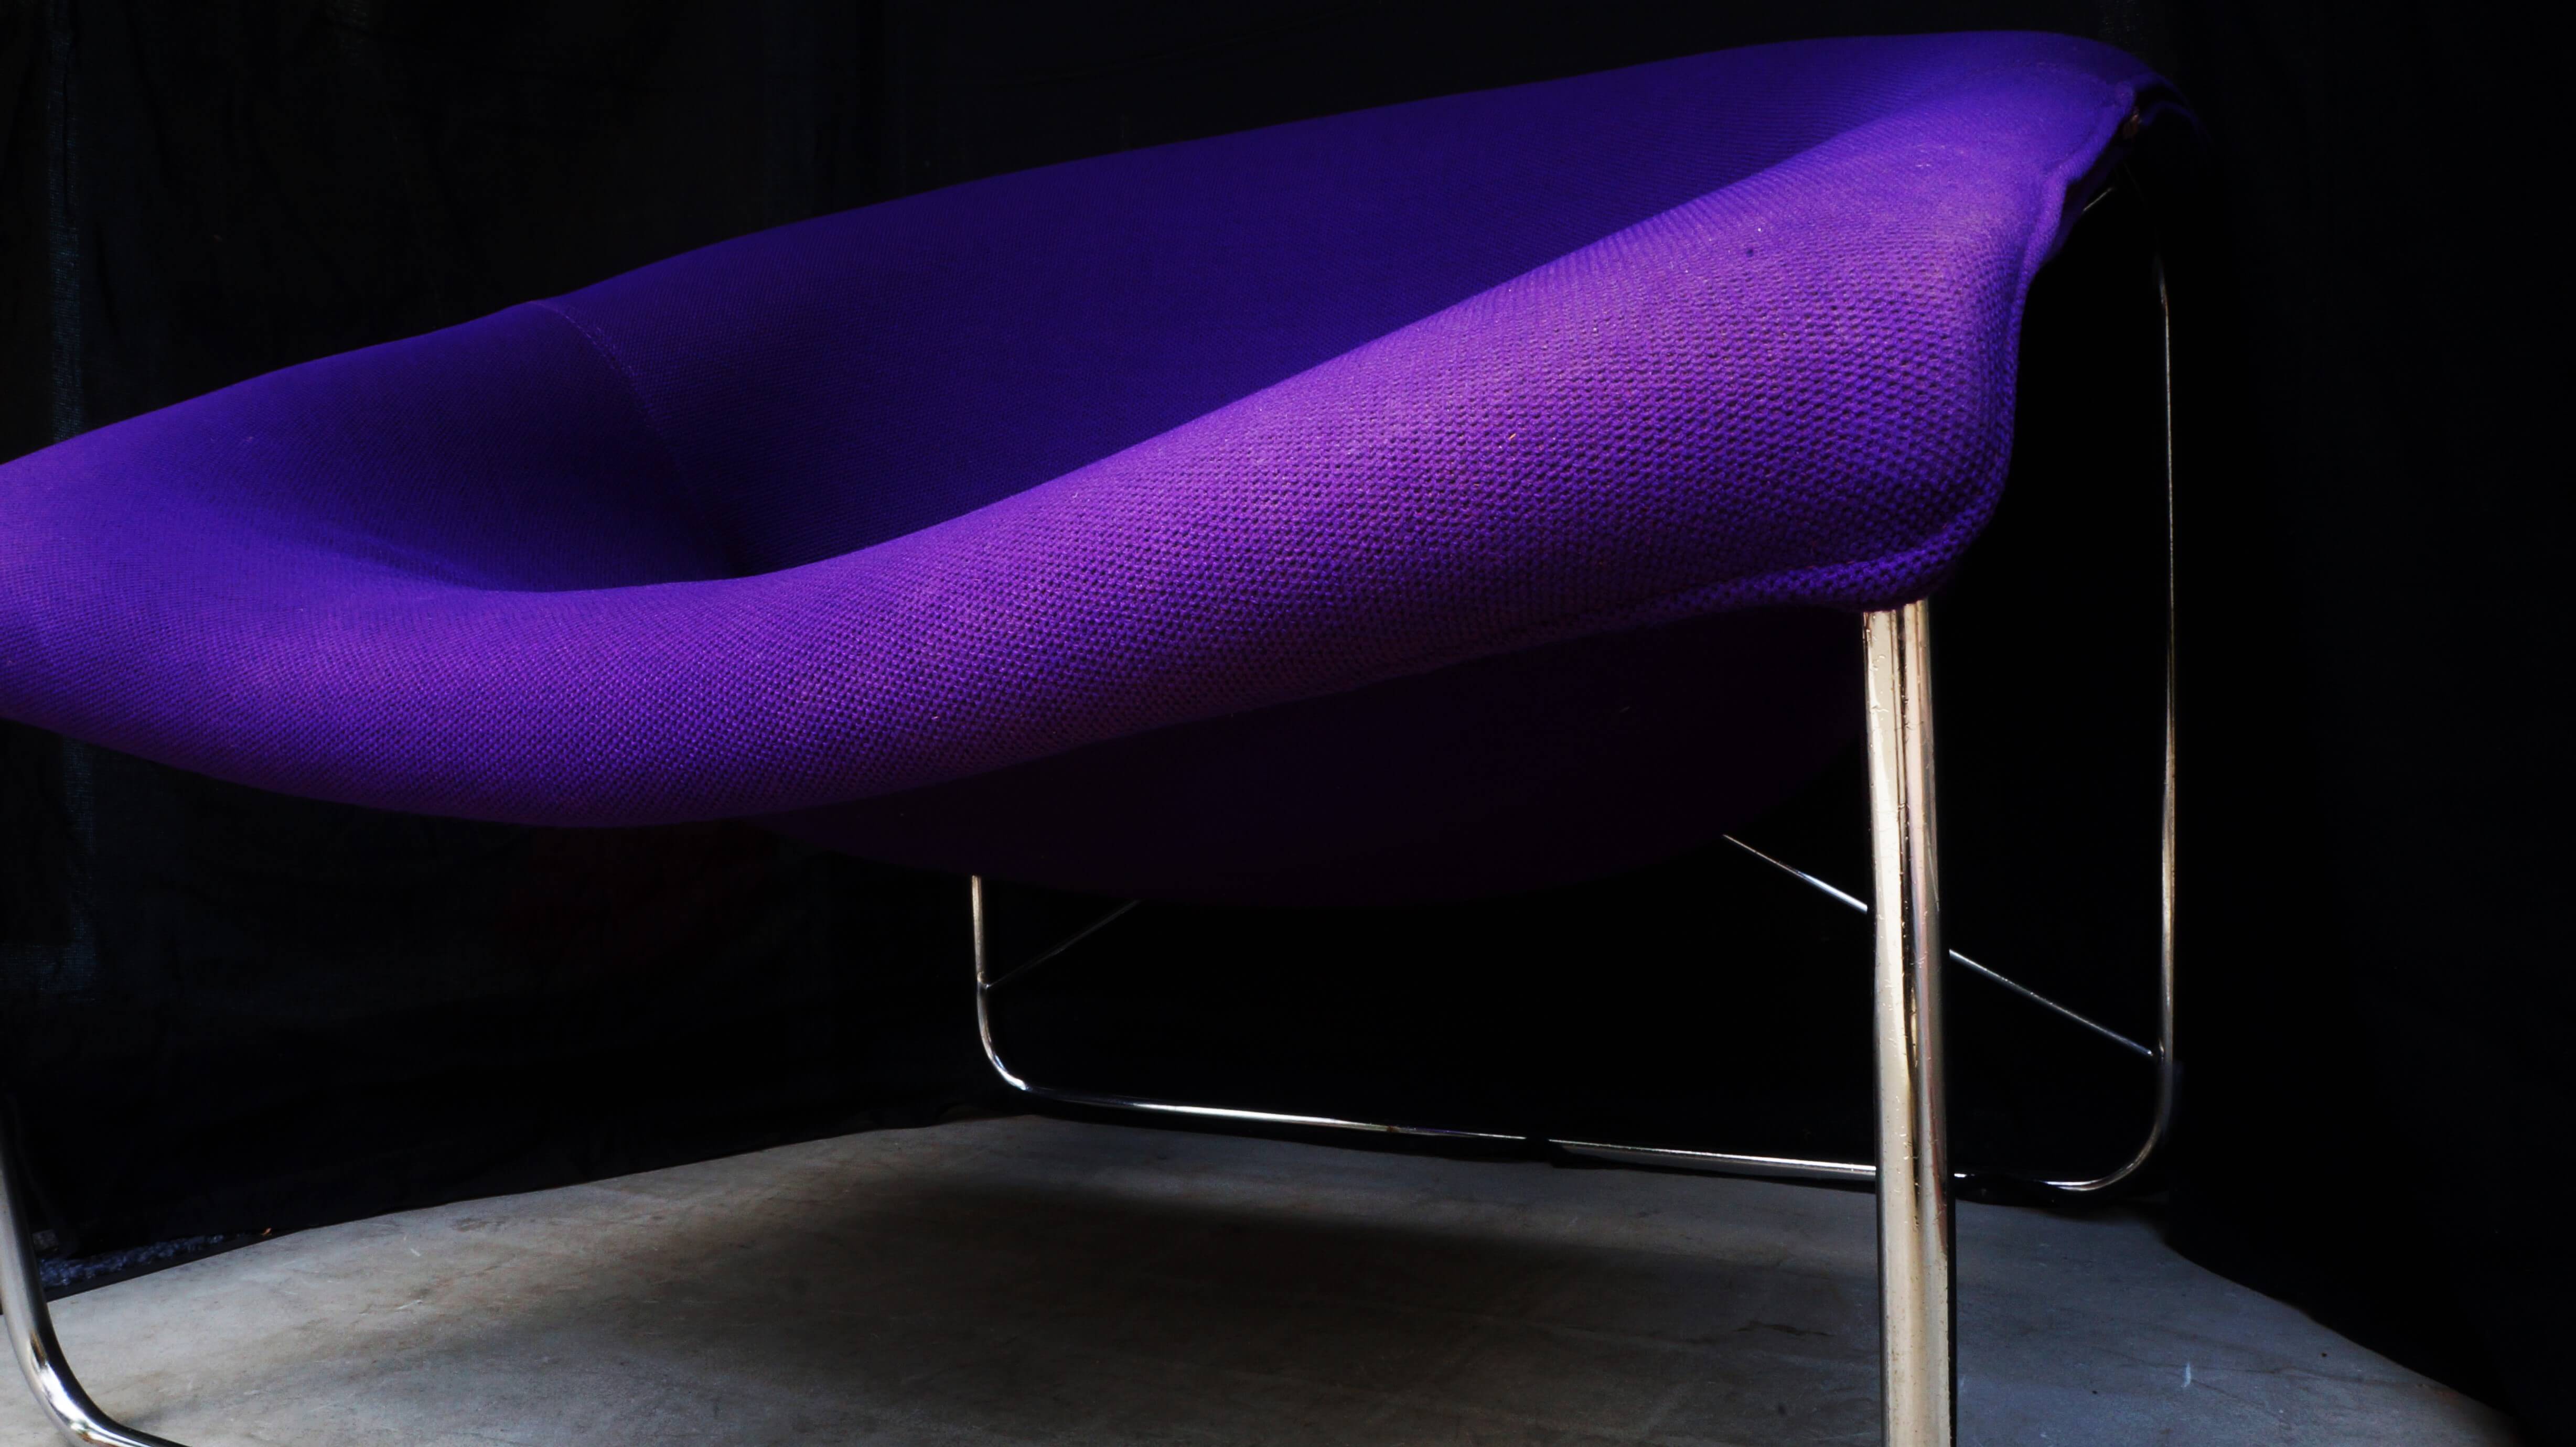 フランス人デザイナー、オリヴィエ・ムルグが1960年代に発表したキュービックチェア。1970年代、フランスで一世を風靡した高級家具ブランド、エアボーン社から発売されました。オリヴィエ・ムルグといえば、スタンリー・キューブリック監督の映画『2001年宇宙の旅』（1968年）に 登場するとても印象的な真っ赤な椅子「Djinn Chair/ジンチェア」でおなじみのデザイナー。インテリアデザインだけでなく、さまざまな分野で活動しており、 60年代にはエアボーン社のデザイナーとして活躍しました。また、ボビーワゴンで知られるデザイナー、ジョエ・コロンボやデンマーク生まれのミッドセンチュリーを代表するデザイナー、ヴェルナー・パントンらと共に、前衛的なインテリアデザイン・プロジェクト「Visiona」（1968～1974年）に参加したことでも知られています。こちらのキュービックチェアは、1968年に「AID International Design Award」を受賞しましたが、実はオリヴィエ・ムルグの作品としてはあまり知られていない、幻の椅子といわれています。スチールのフレームとファブリックのシートという異素材を組み合わせたデザイン。一体成形の有機的なフォルムがミッドセンチュリーやスペースエイジらしい雰囲気を醸し出しています。インパクトのあるルックスで、お部屋の主役になるような芸術的なプロダクトではありますが、腰かけてみると体全体が包み込まれるような、快適な座り心地。ぜひ、インテリアとしても快適なラウンジチェアとしてもお使い頂きたい一脚です。ヴィンテージでしか出会えない、貴重なチェアをぜひいかがでしょうか♪～【東京都杉並区阿佐ヶ谷北アンティークショップ 古一/ZACK高円寺店】　古一/ふるいちでは出張無料買取も行っております。杉並区周辺はもちろん、世田谷区・目黒区・武蔵野市・新宿区等の東京近郊のお見積もりも！ビンテージ家具・インテリア雑貨・ランプ・USED品・ リサイクルなら古一/フルイチへ～